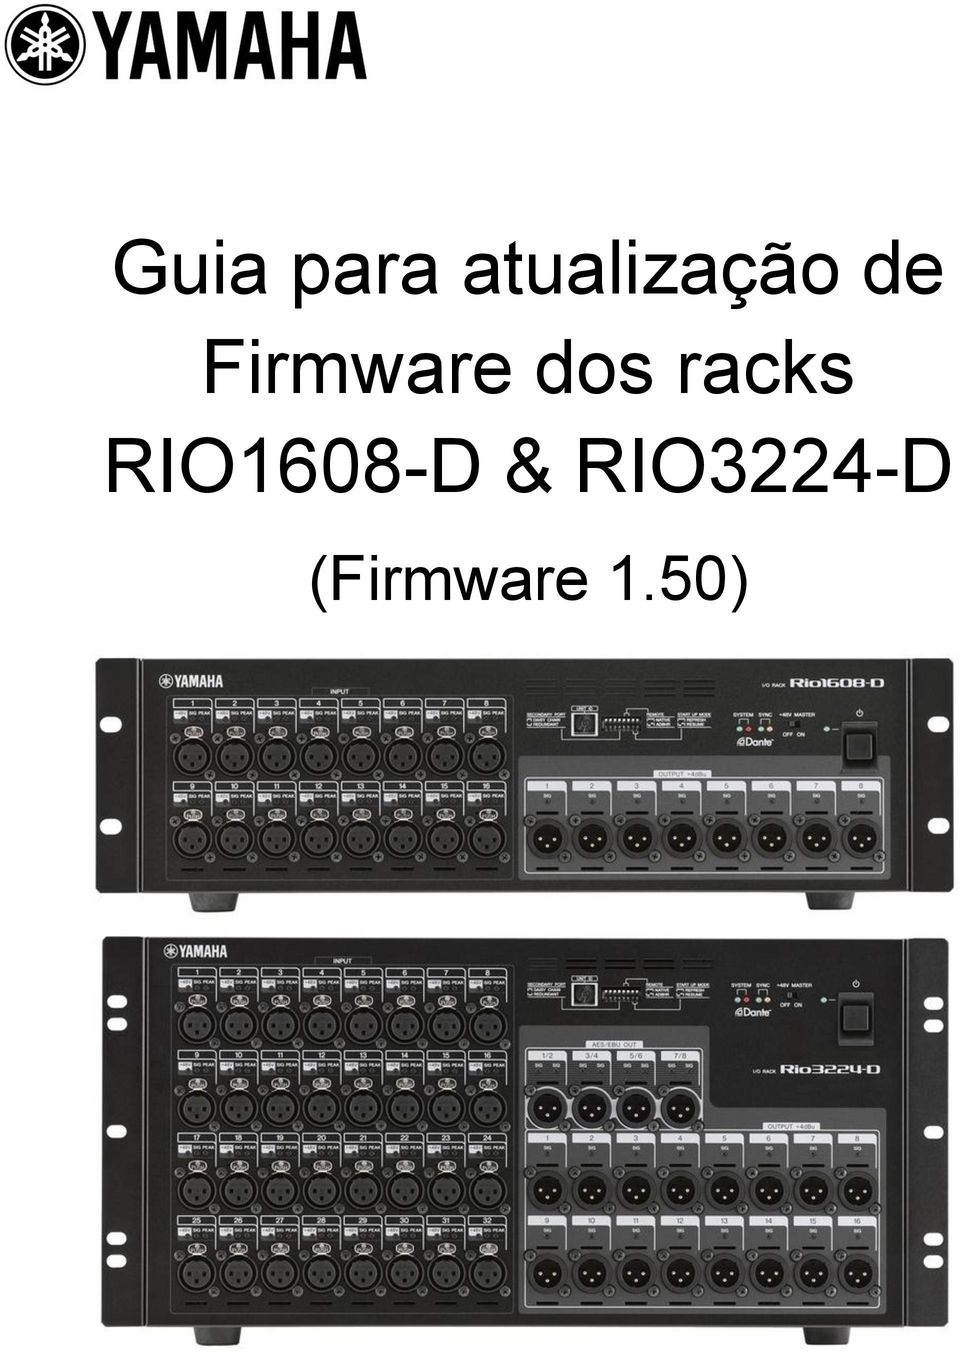 Firmware dos racks